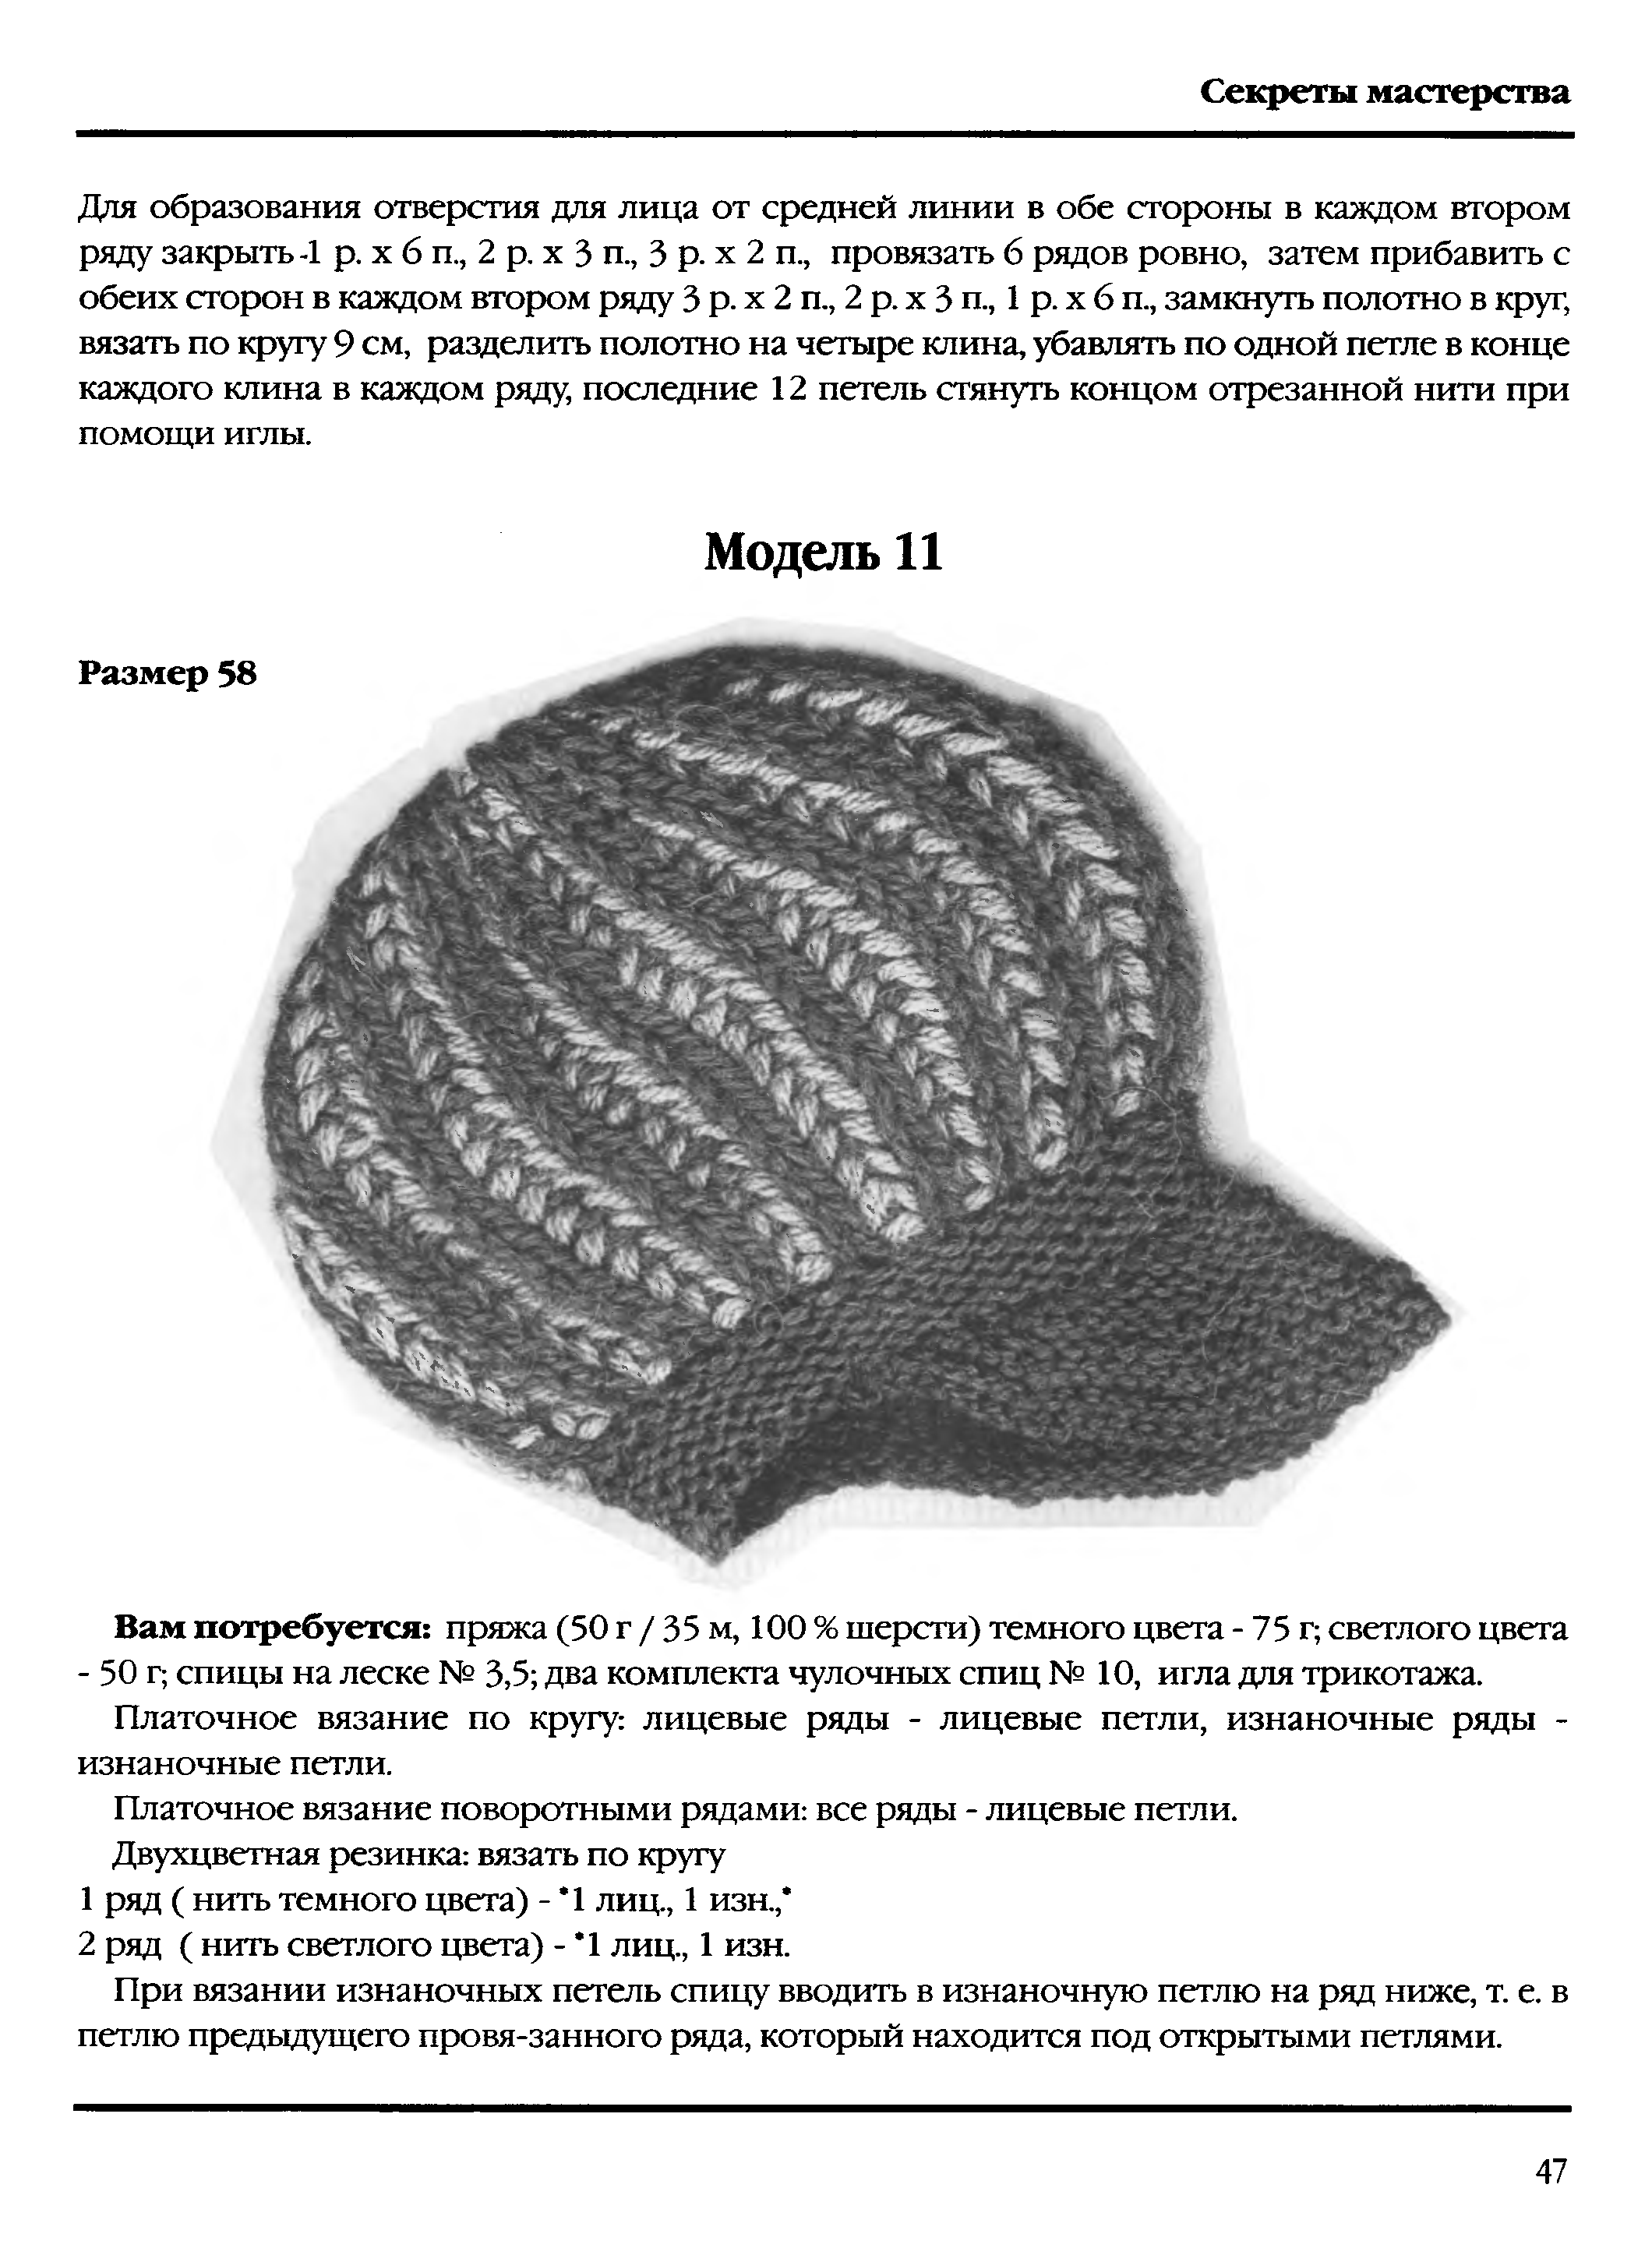 Женская шапка спицами с описанием и схемами